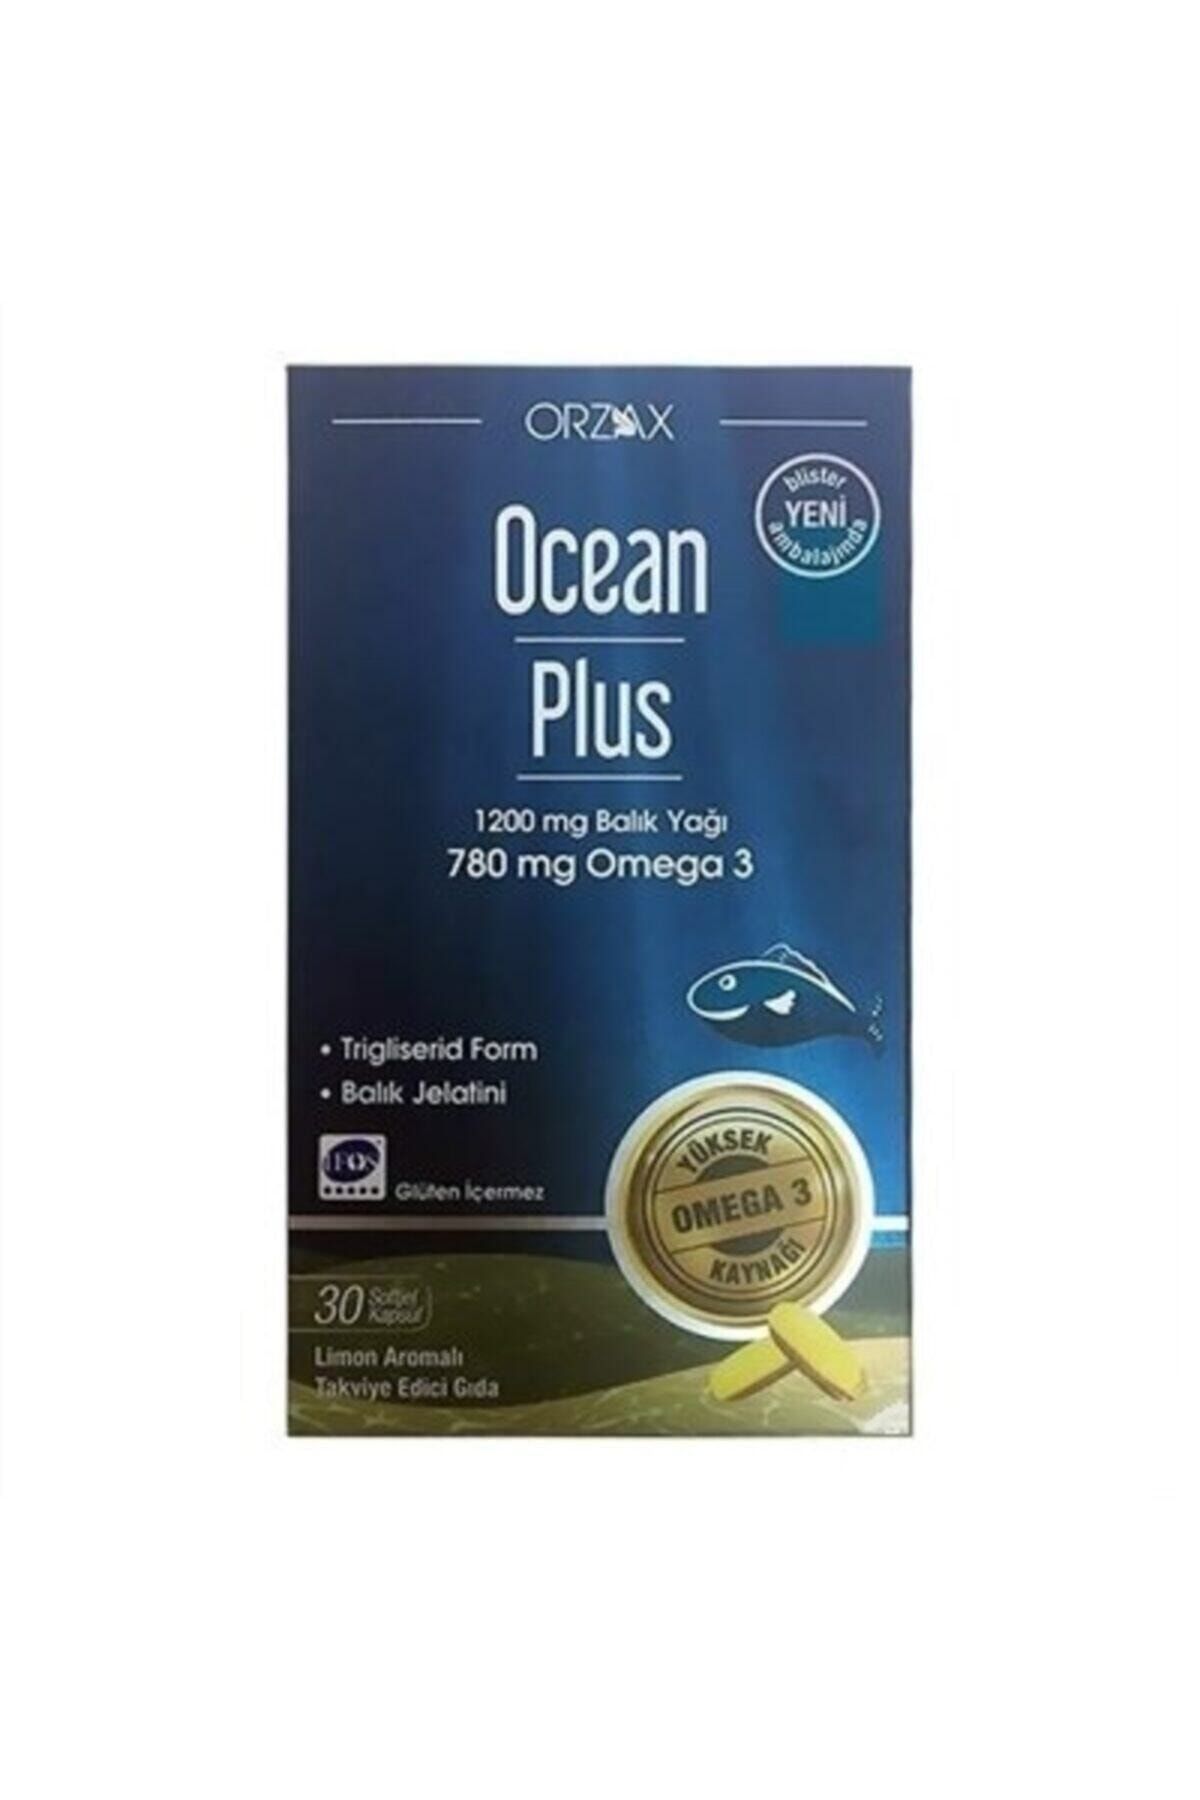 Ocean Plus 1200 Mg Balık Yağı Omega 3 30 Kapsül